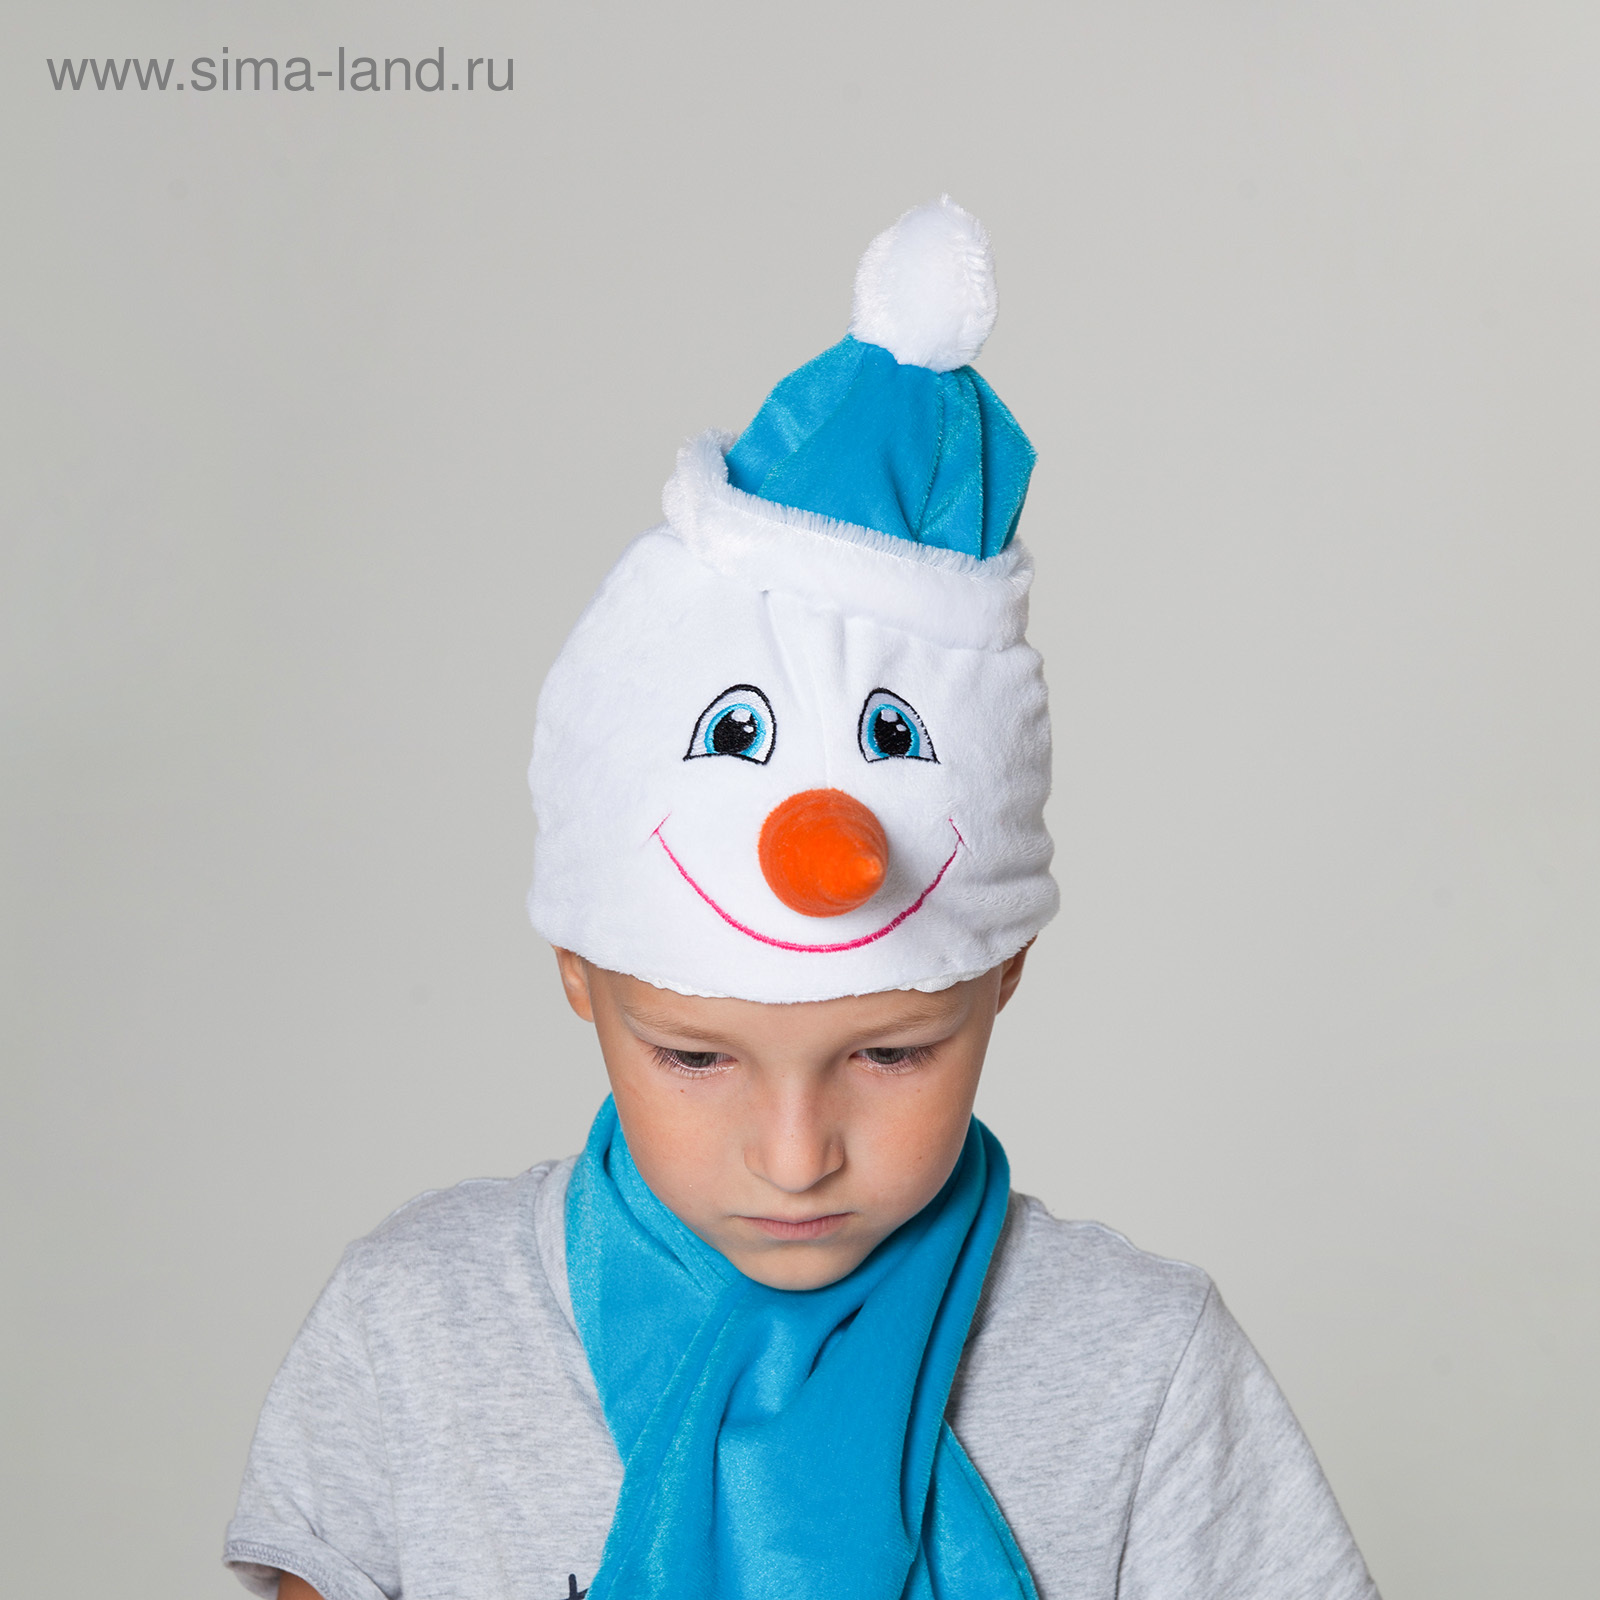 Набор аксессуаров для снеговика: шапка, шарф, морковка, пуговицы